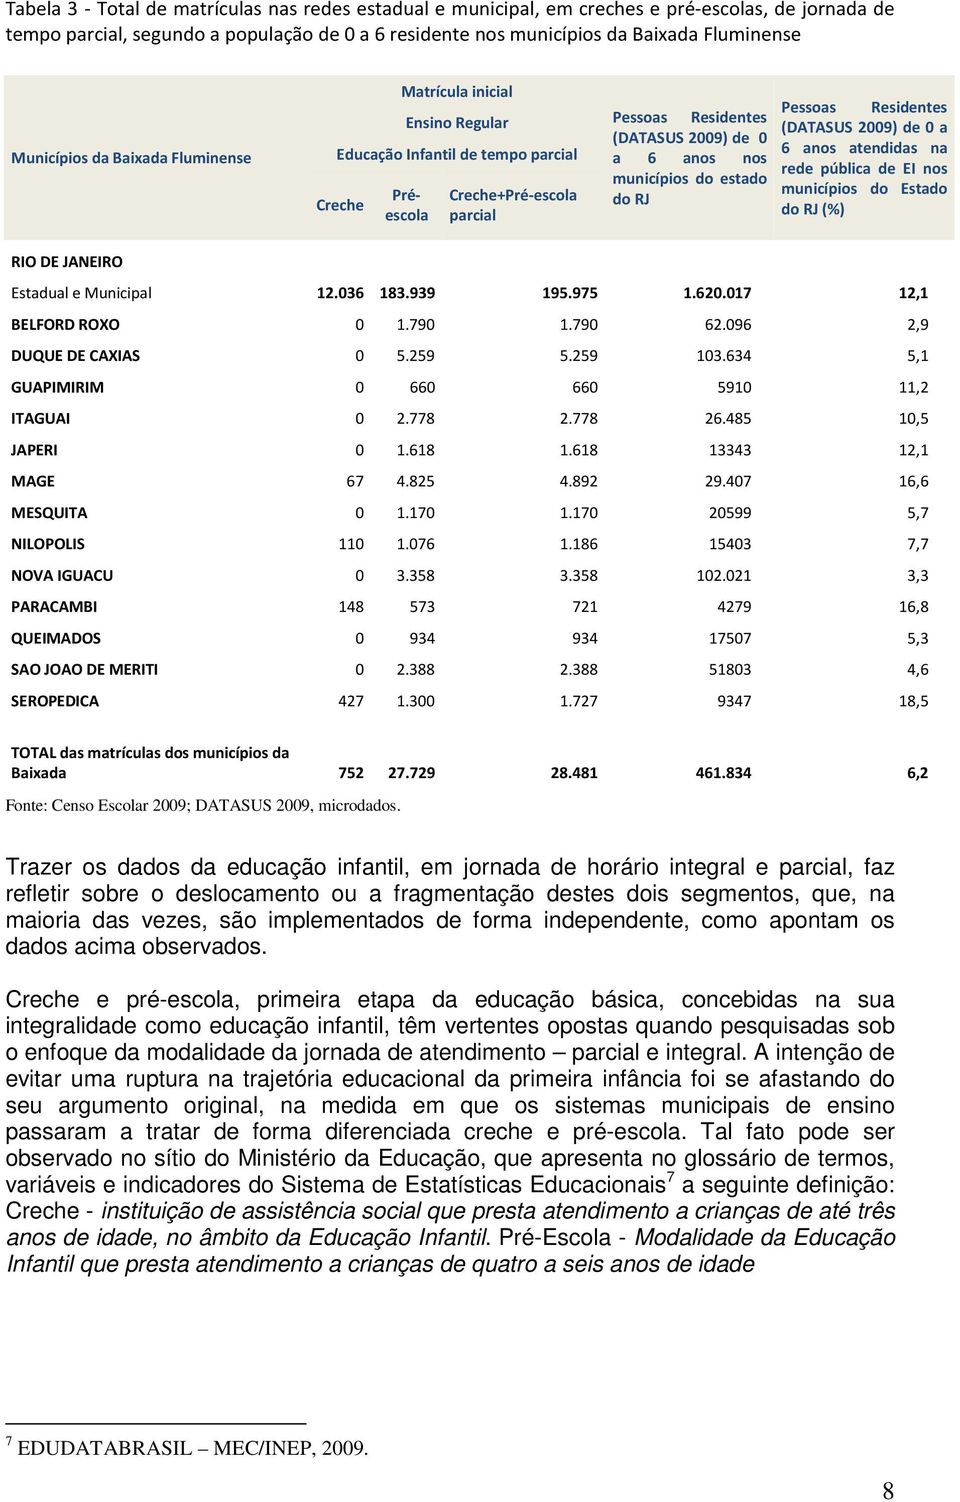 municípios do estado do RJ Pessoas Residentes (DATASUS 2009) de 0 a 6 anos atendidas na rede pública de EI nos municípios do Estado do RJ (%) RIO DE JANEIRO Estadual e Municipal 12.036 183.939 195.